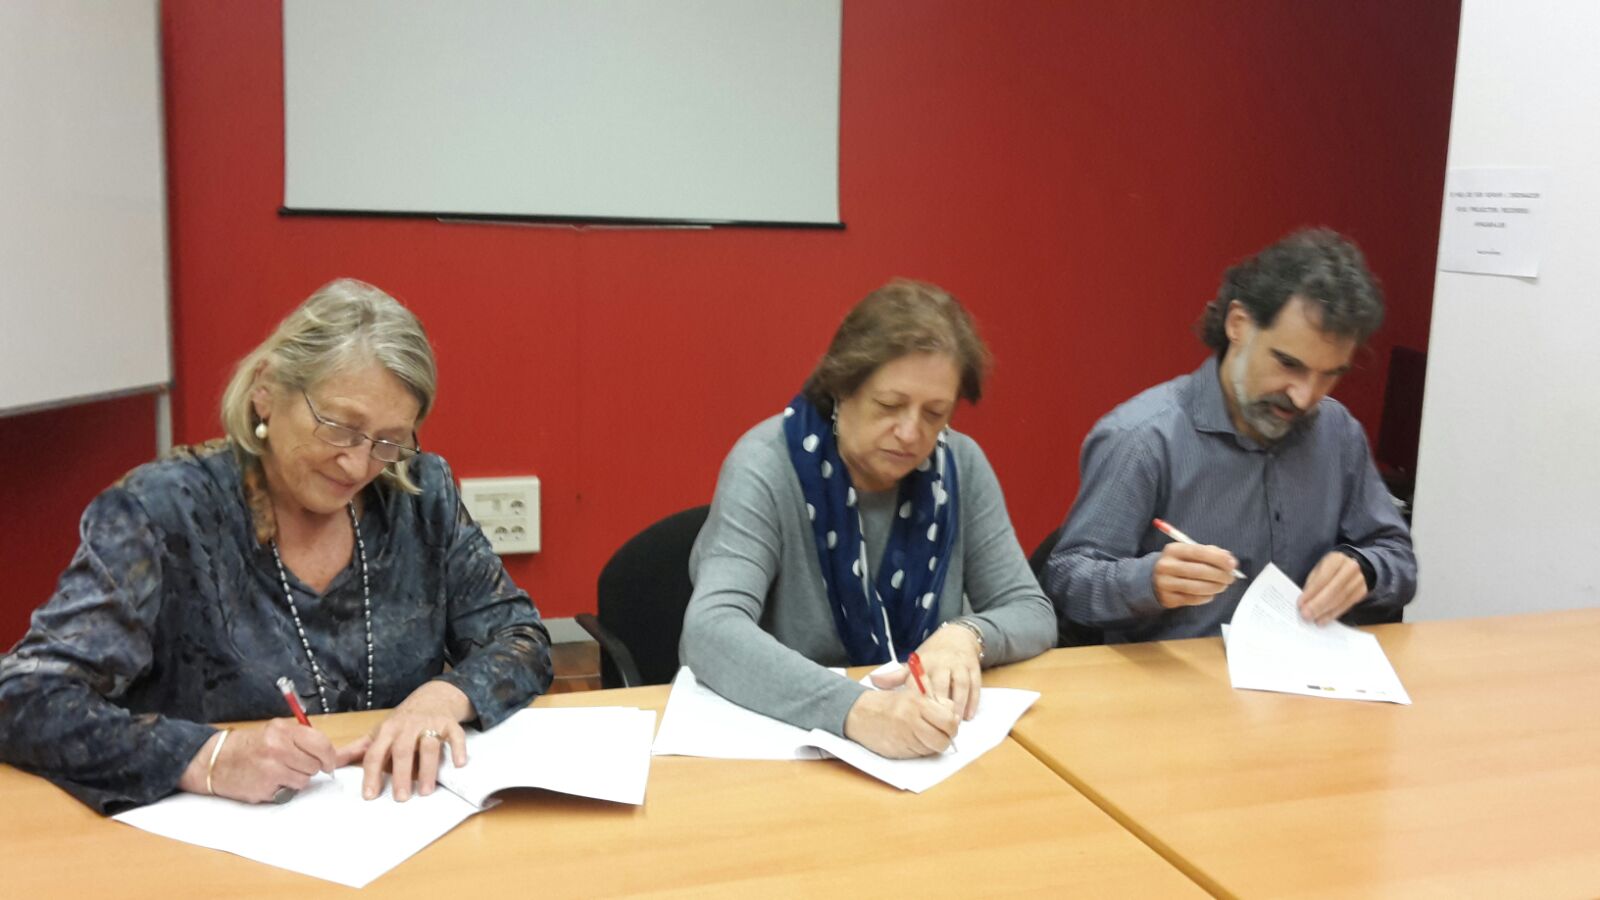 Representants d'ECAS, Òmnium i Coop57 signen el conveni de 'Lliures'